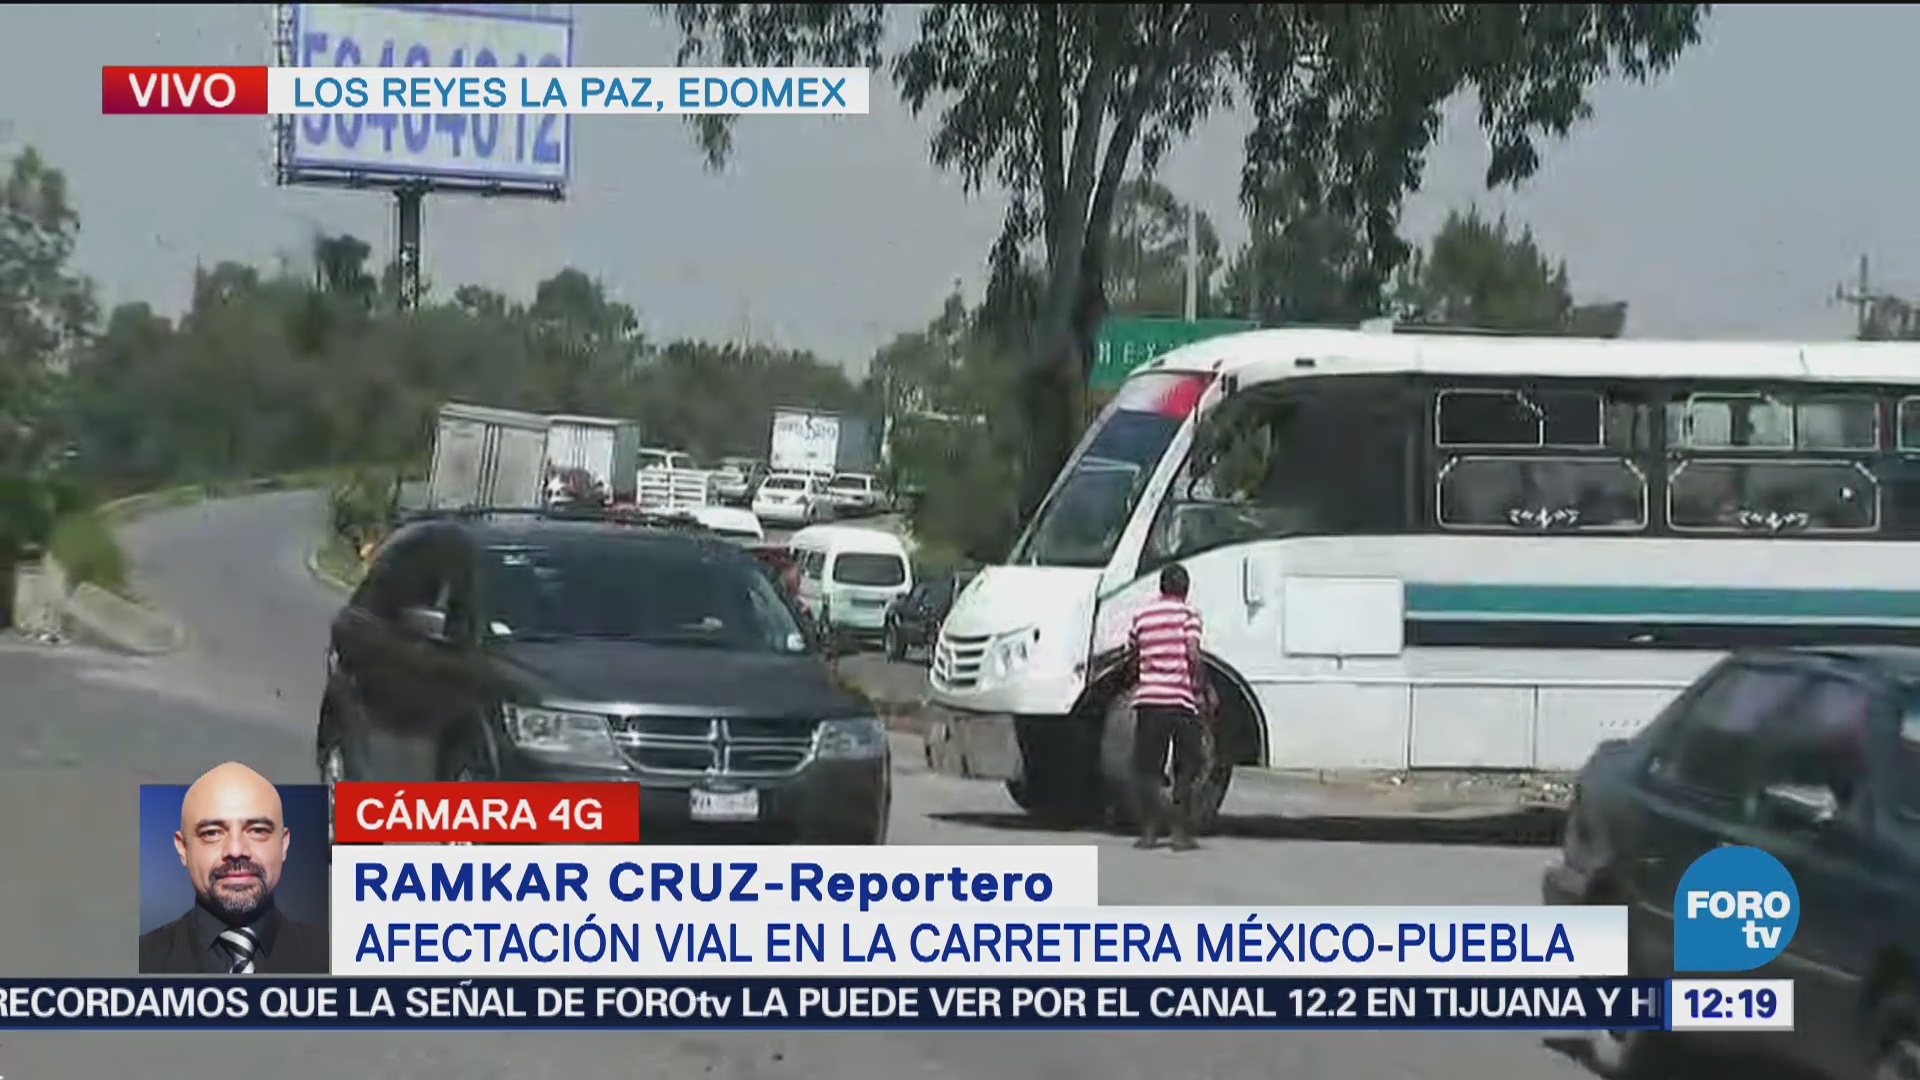 Siguen problemas viales en carretera México-Puebla bloqueo